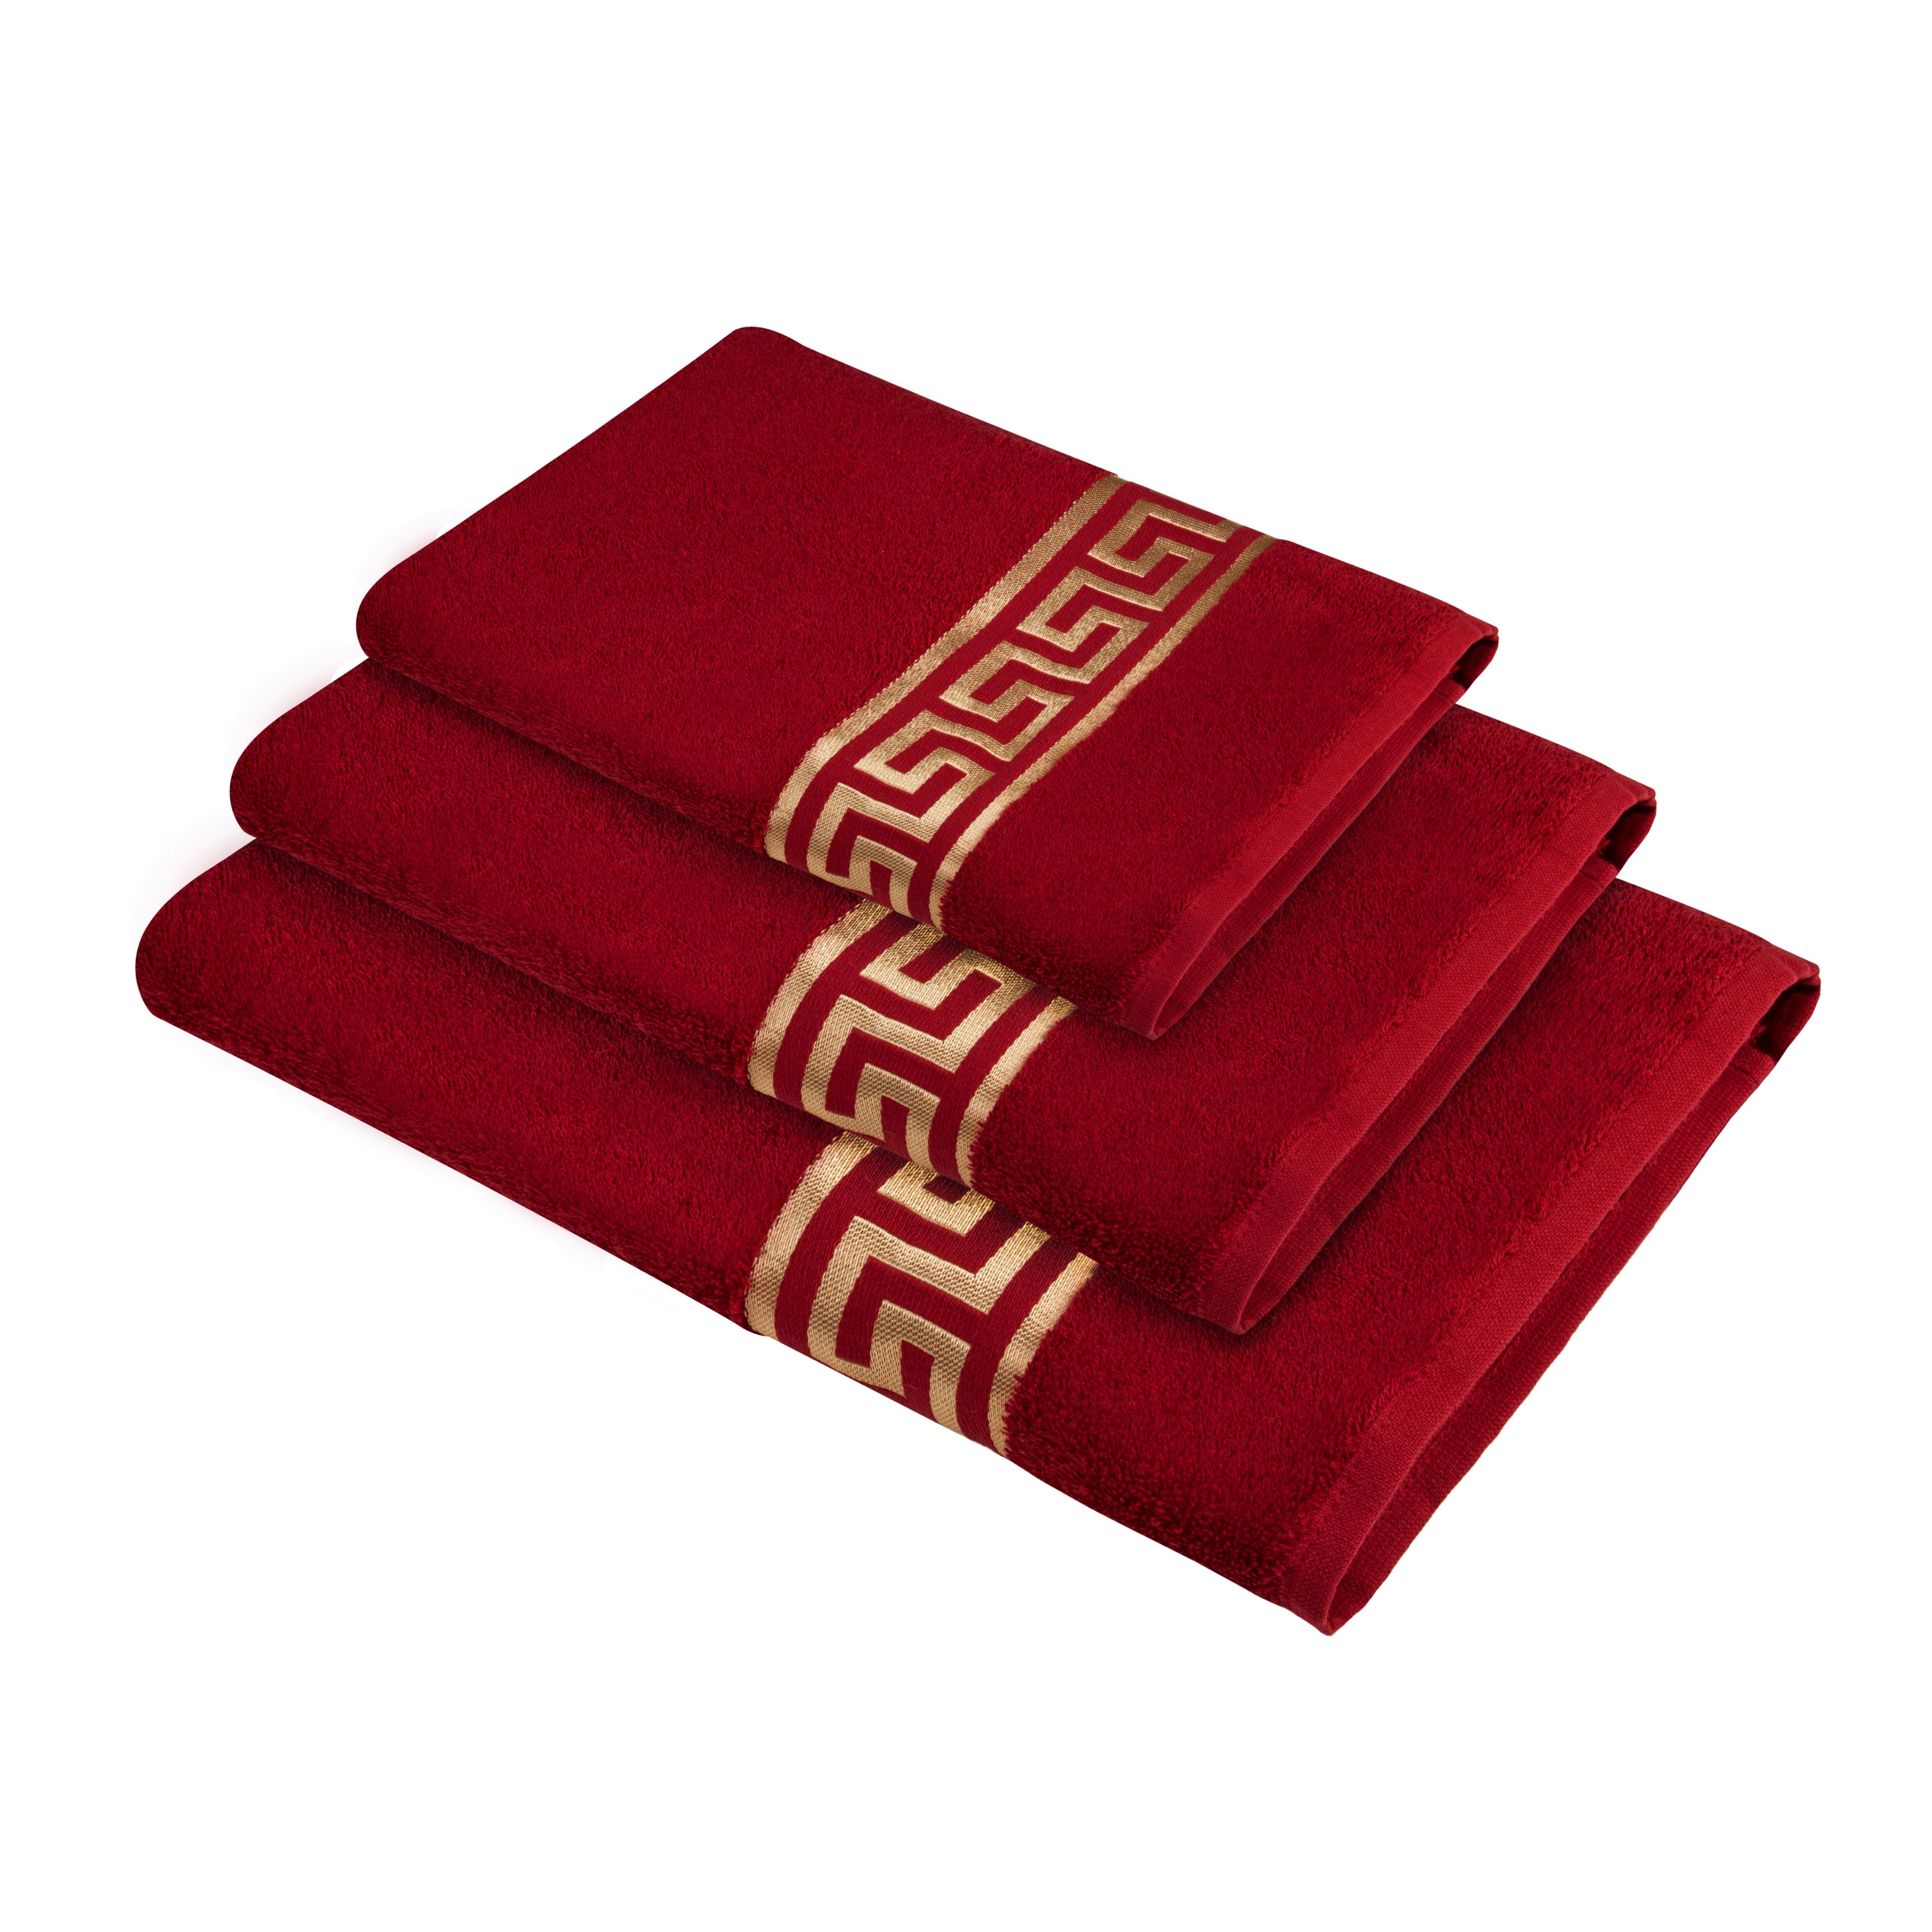 Luxus Handtücher Mäander in rot gold eingestickt - 100% Baumwolle Frottee - okötex